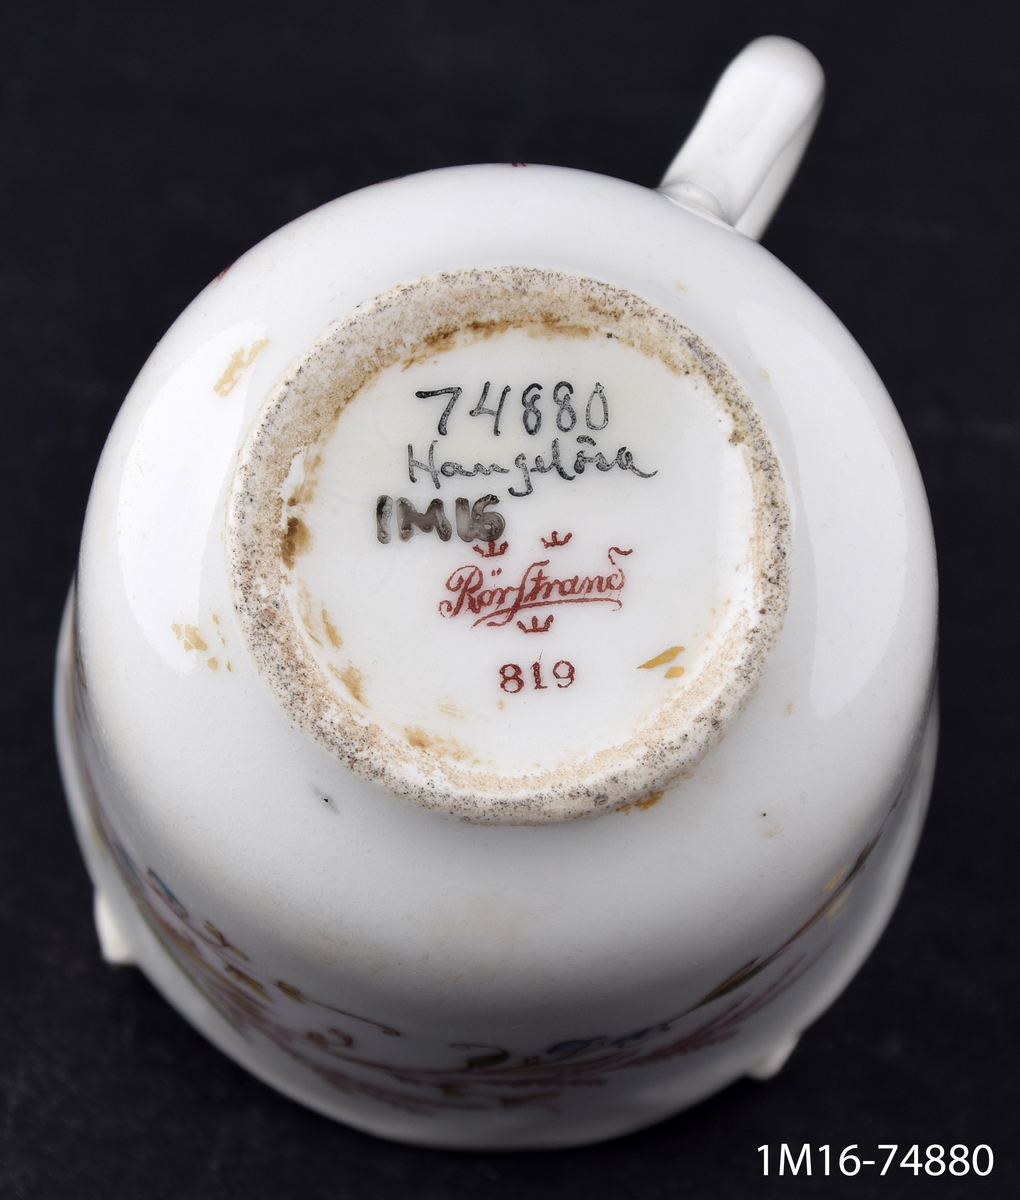 Kaffekopp, av porslin, nästan cylindrisk, motiv, blommor som sveper om koppen. Märkt: Rörstrand 819.